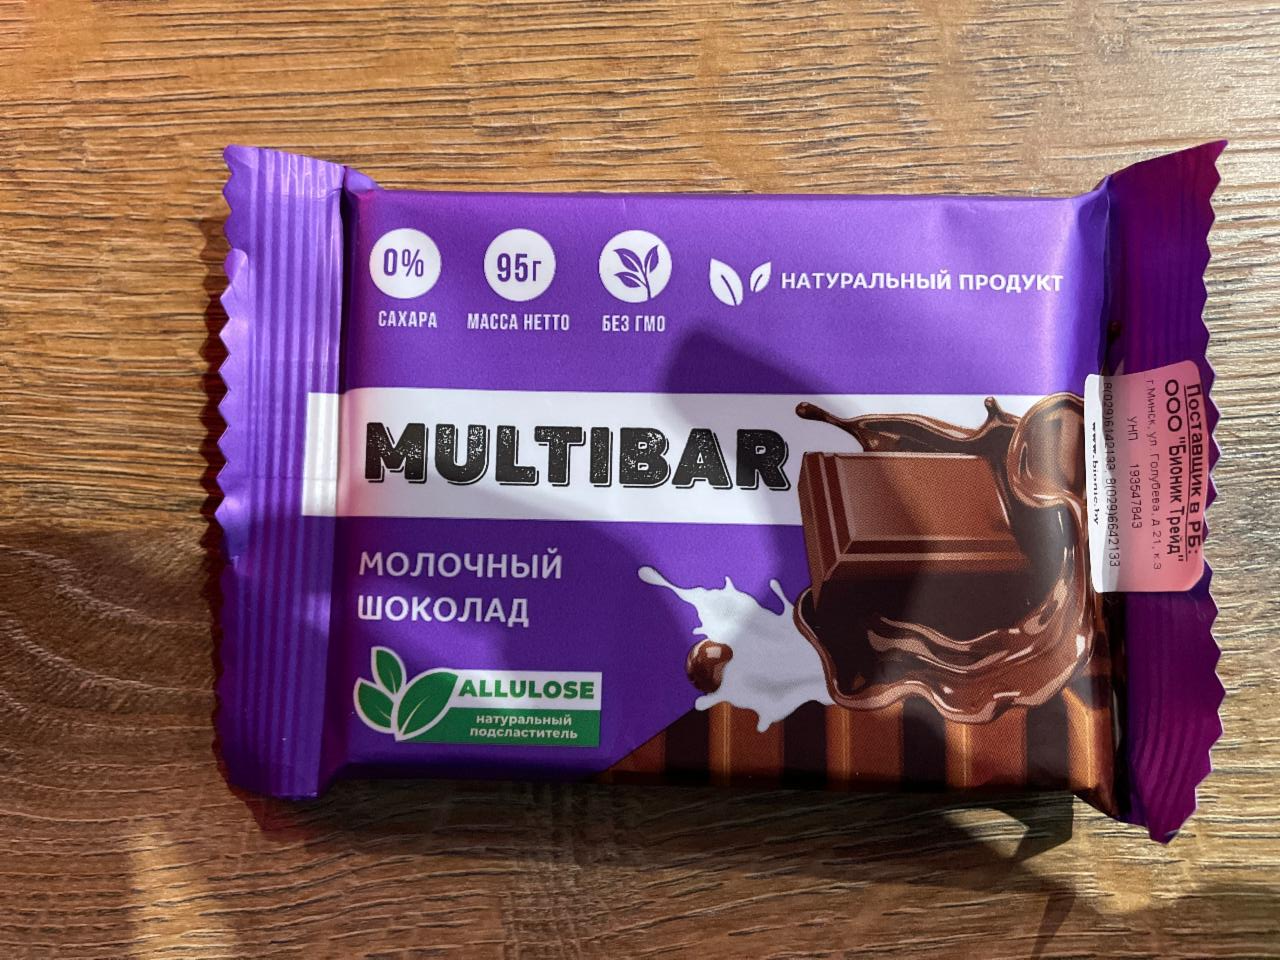 Фото - шоколад молочный Multibar